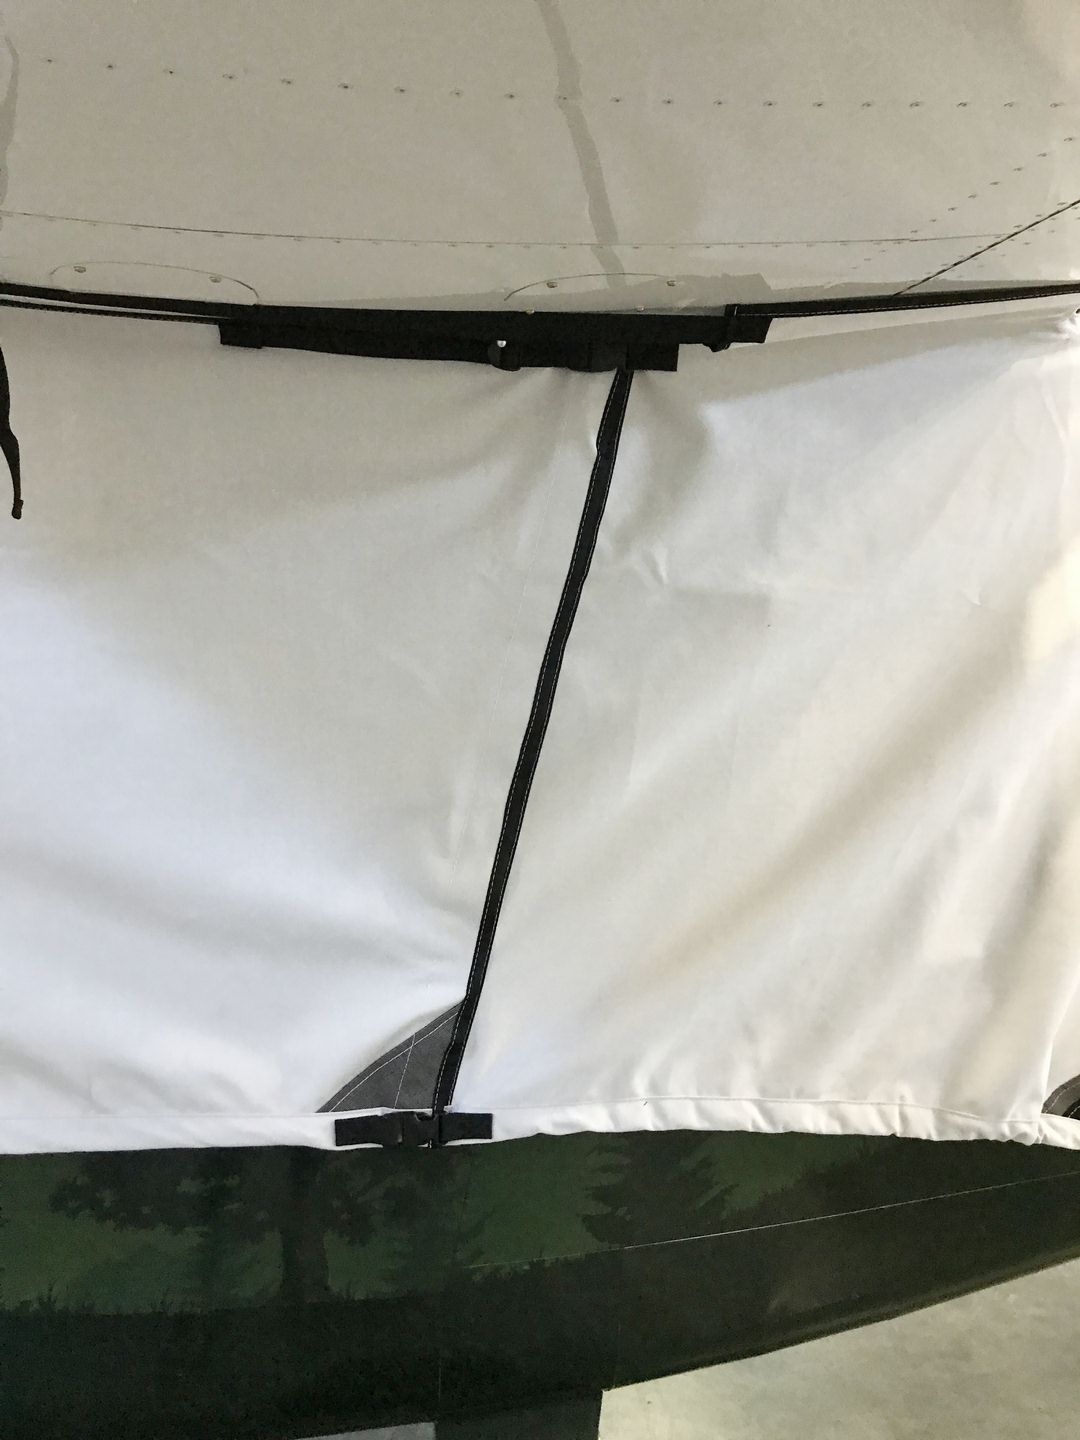 Vashon Ranger R7 Canopy Cover